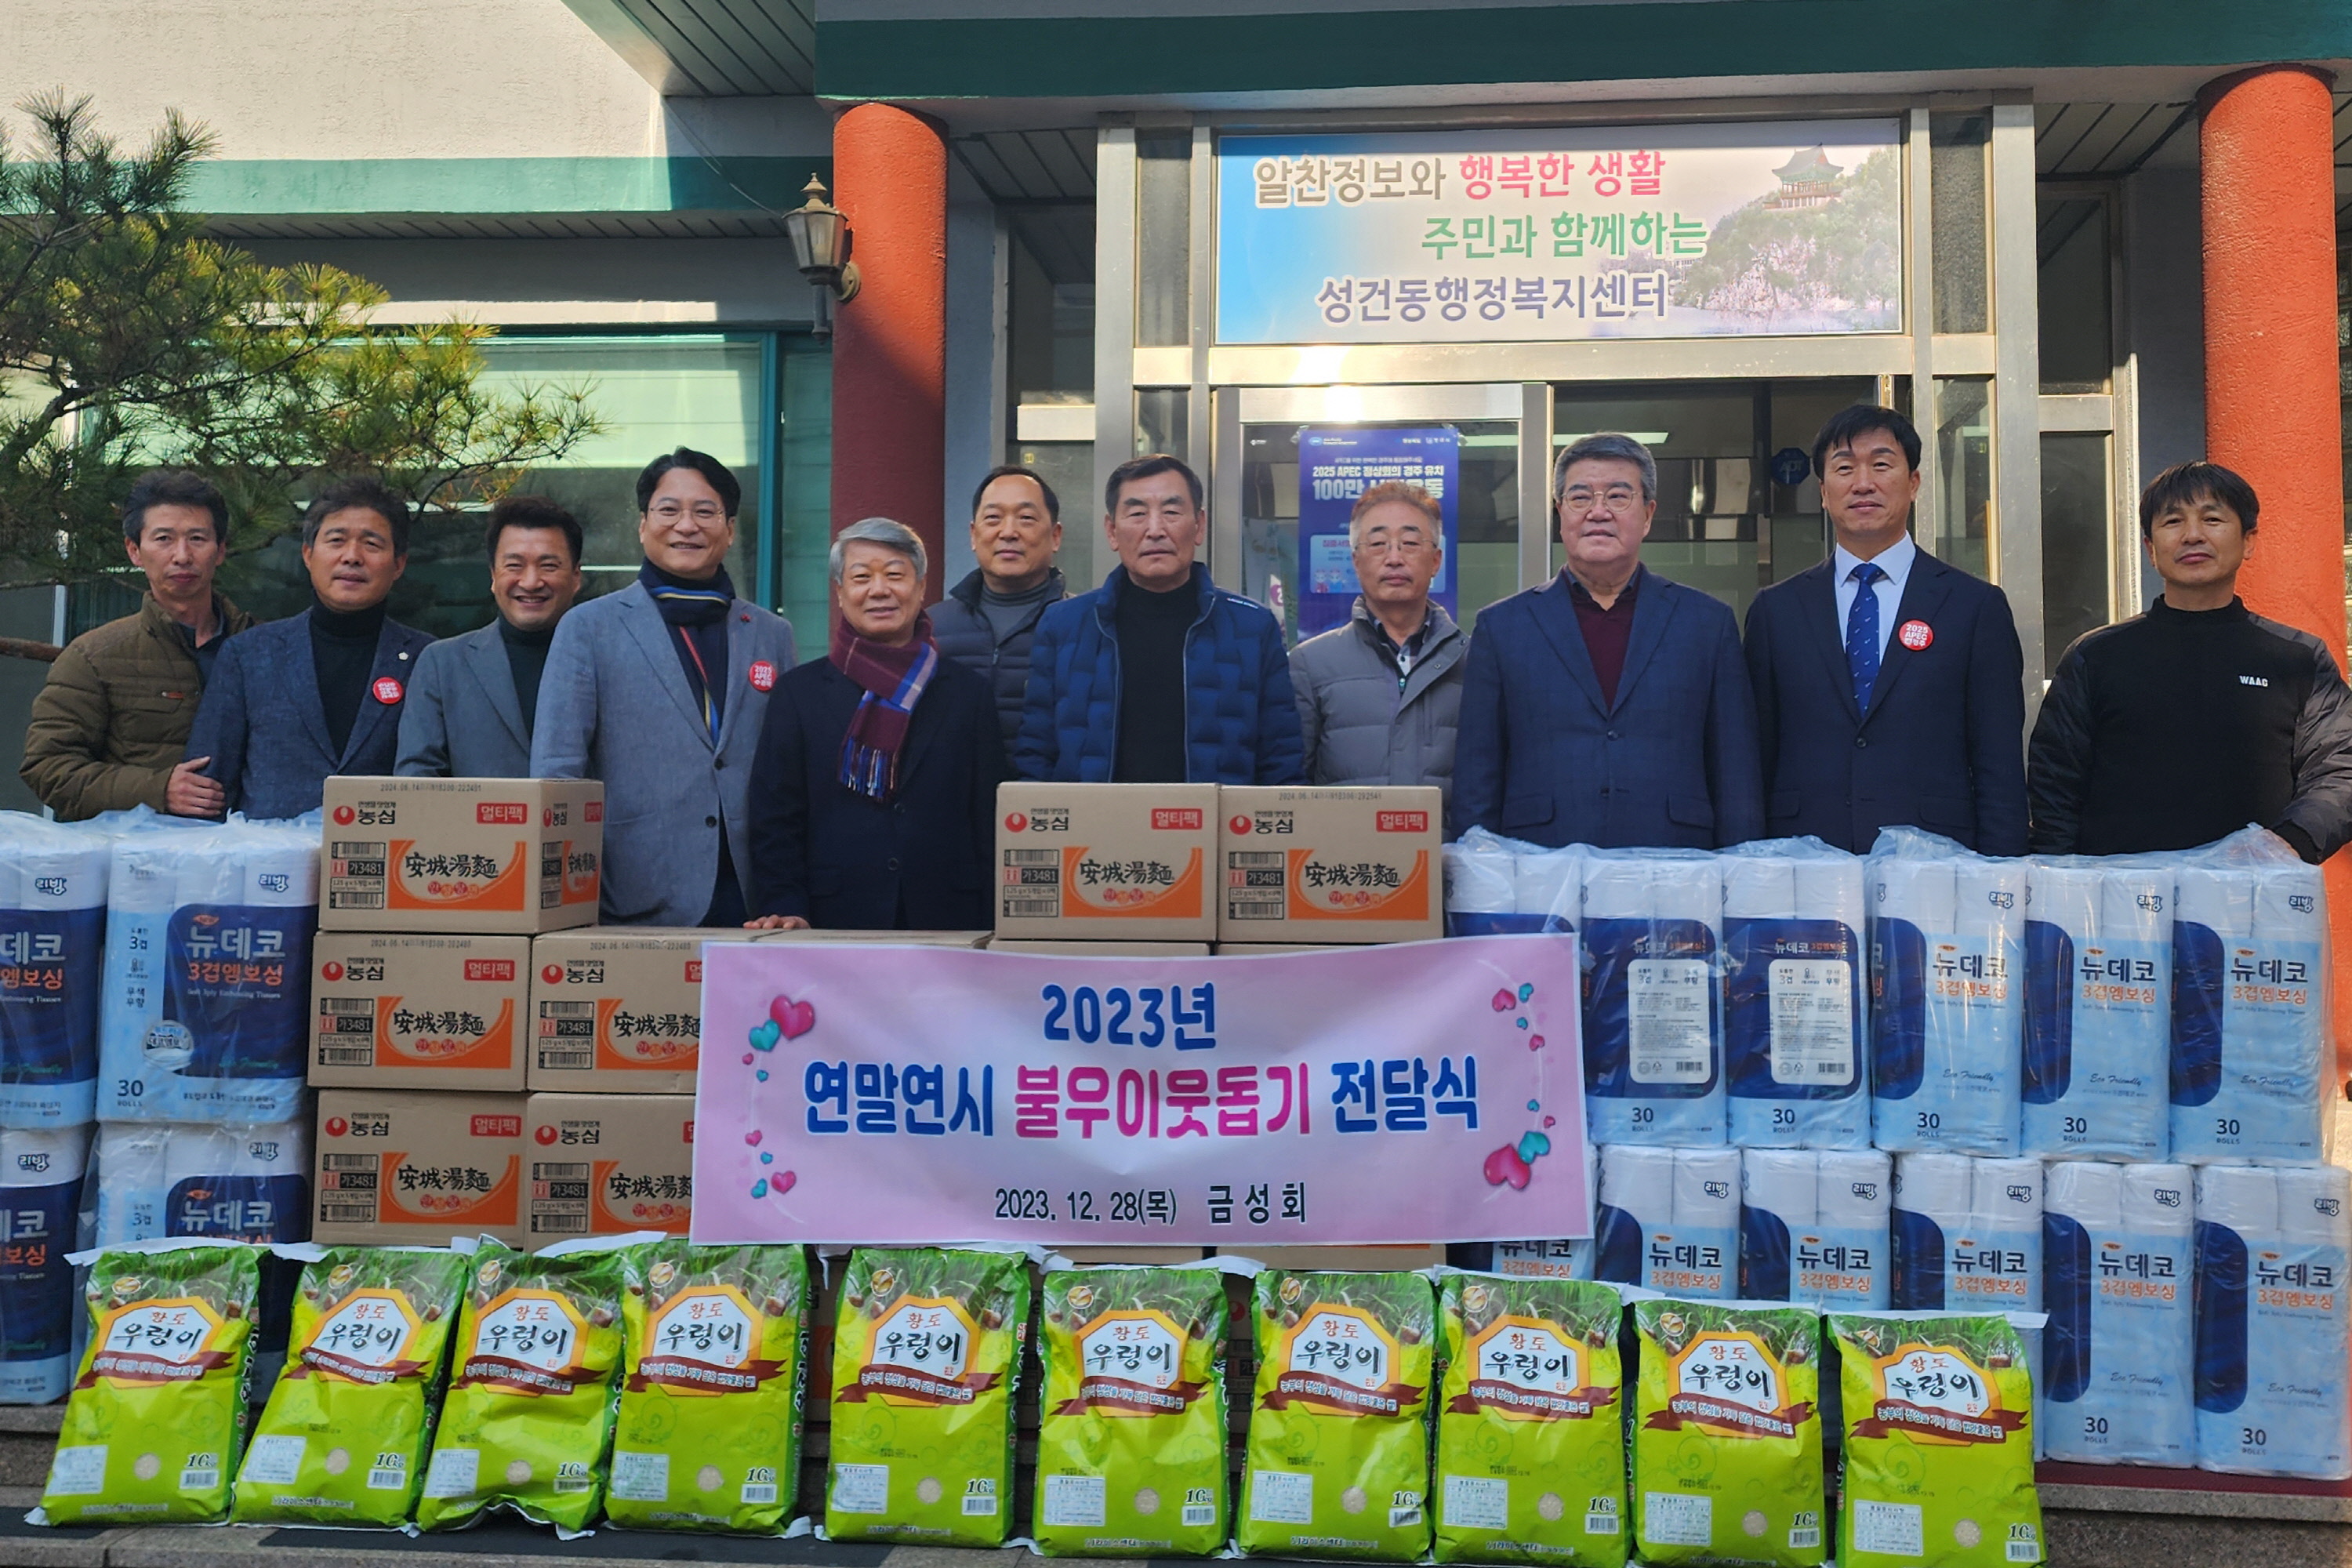 지난 28일 금성회에서 성건동 행정복지센터를 방문해 연말 지역 이웃돕기 100만원 상당의 물품을 기부했다.